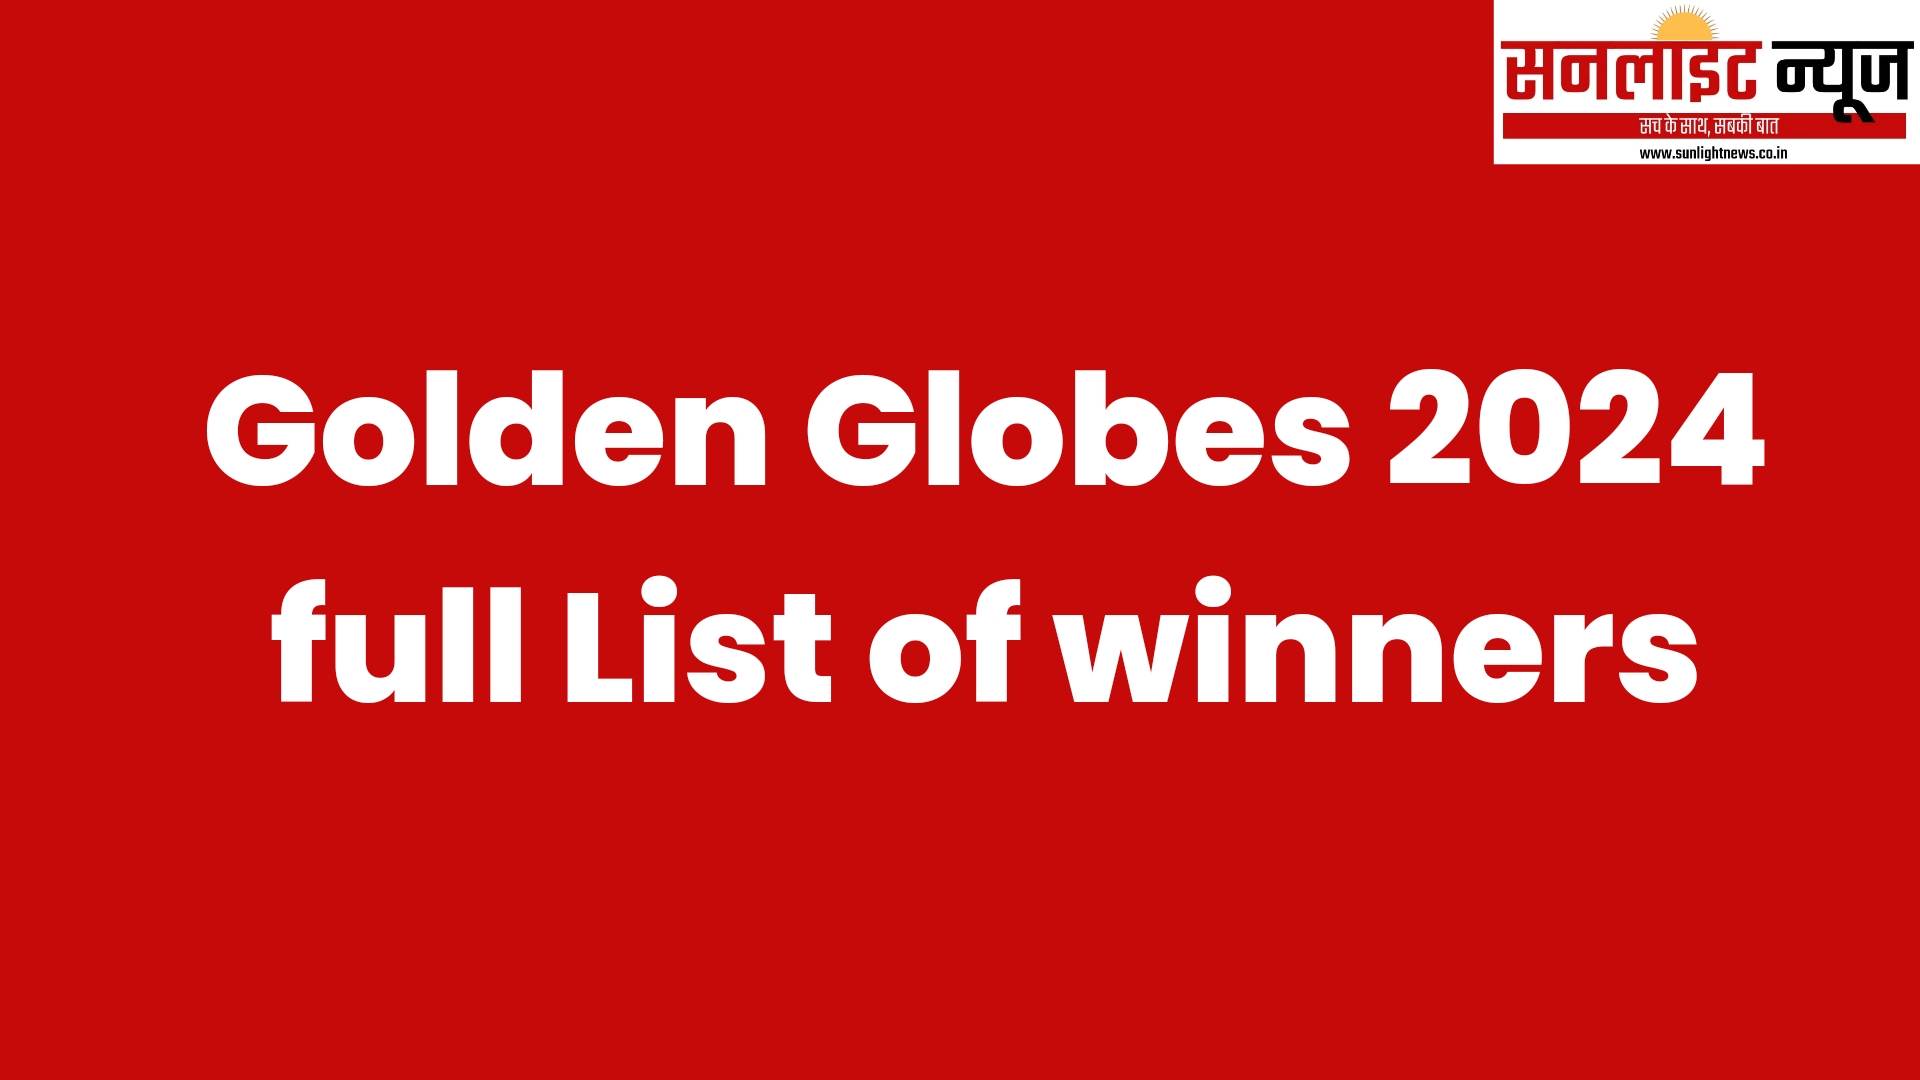 Golden Globes 2024 full List of winners